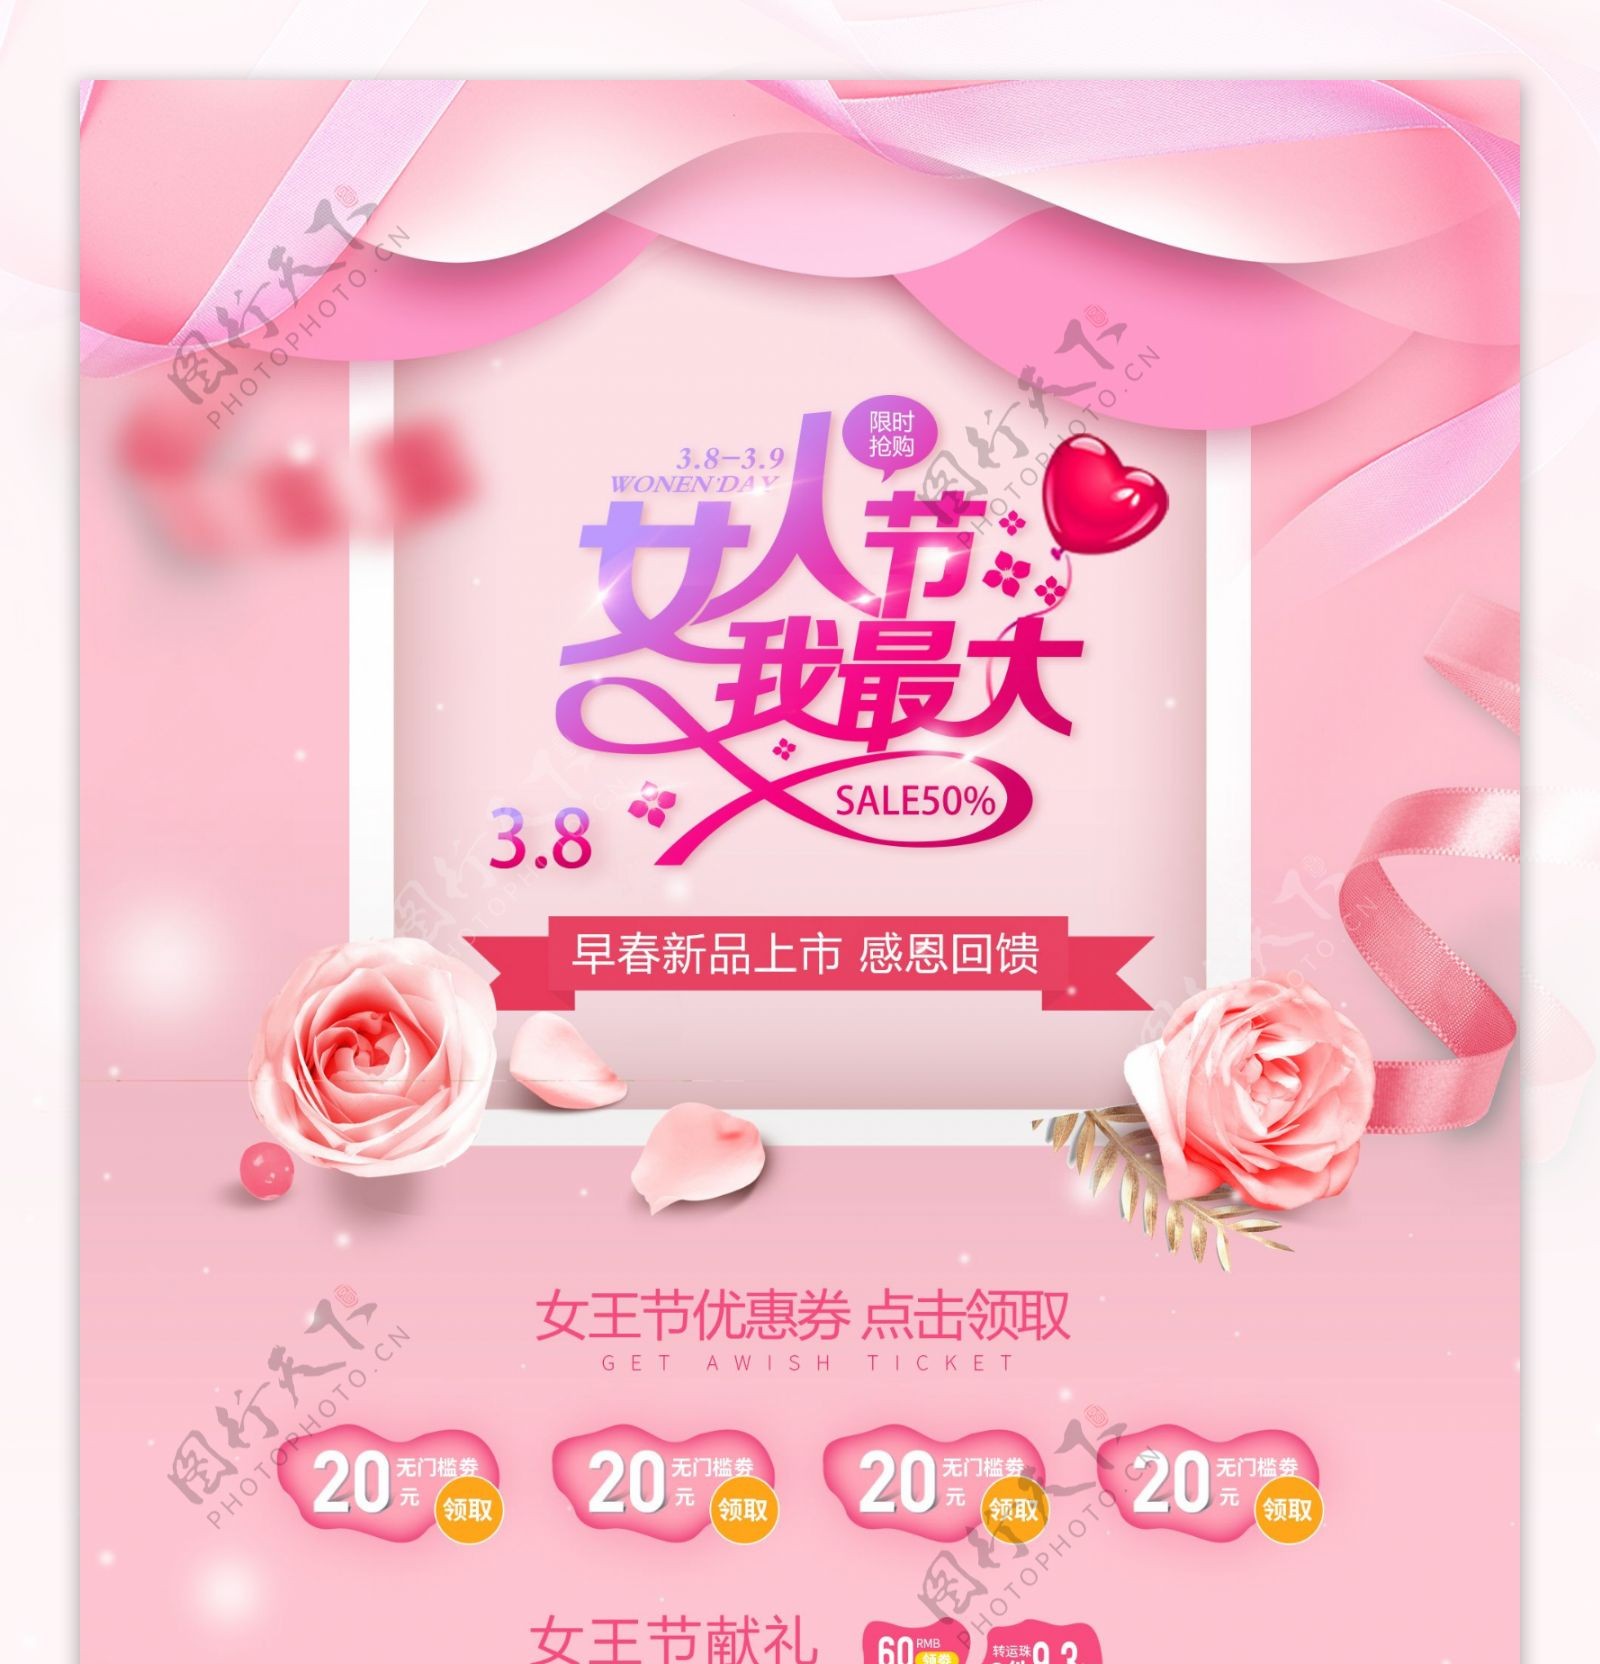 38女人节女神节美妆化妆品电商通用首页